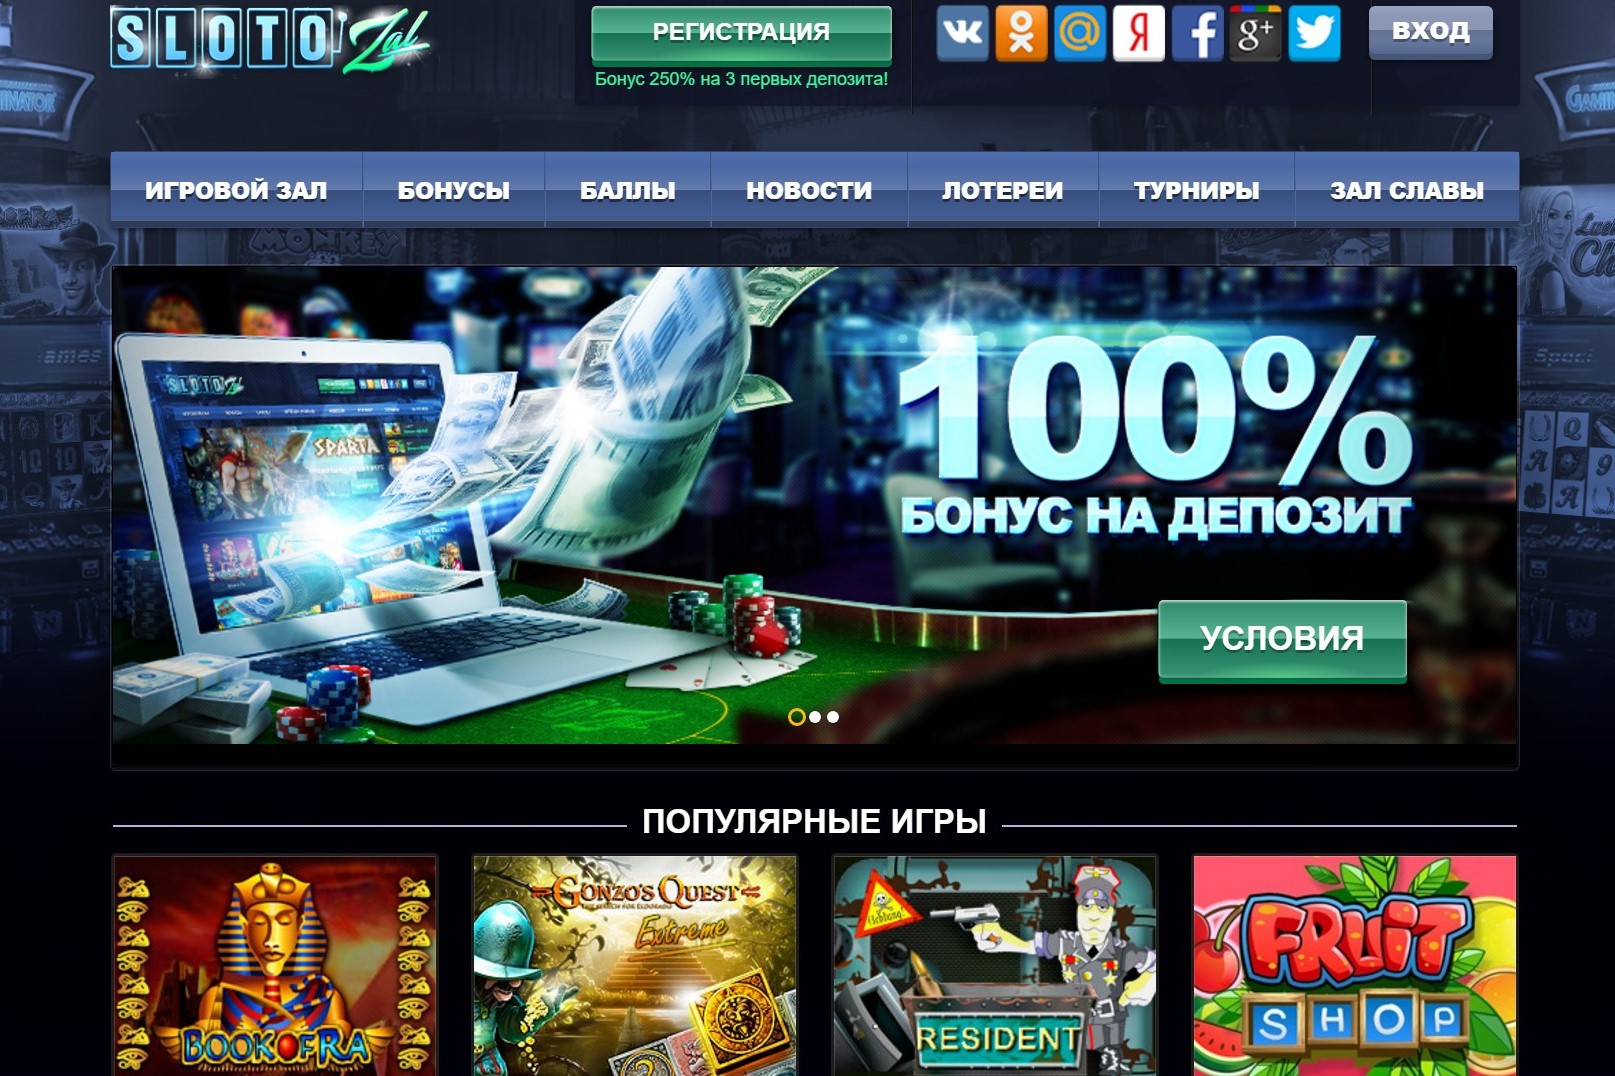 Инновации в мире азартных игр и глобализация: казино Слотозал